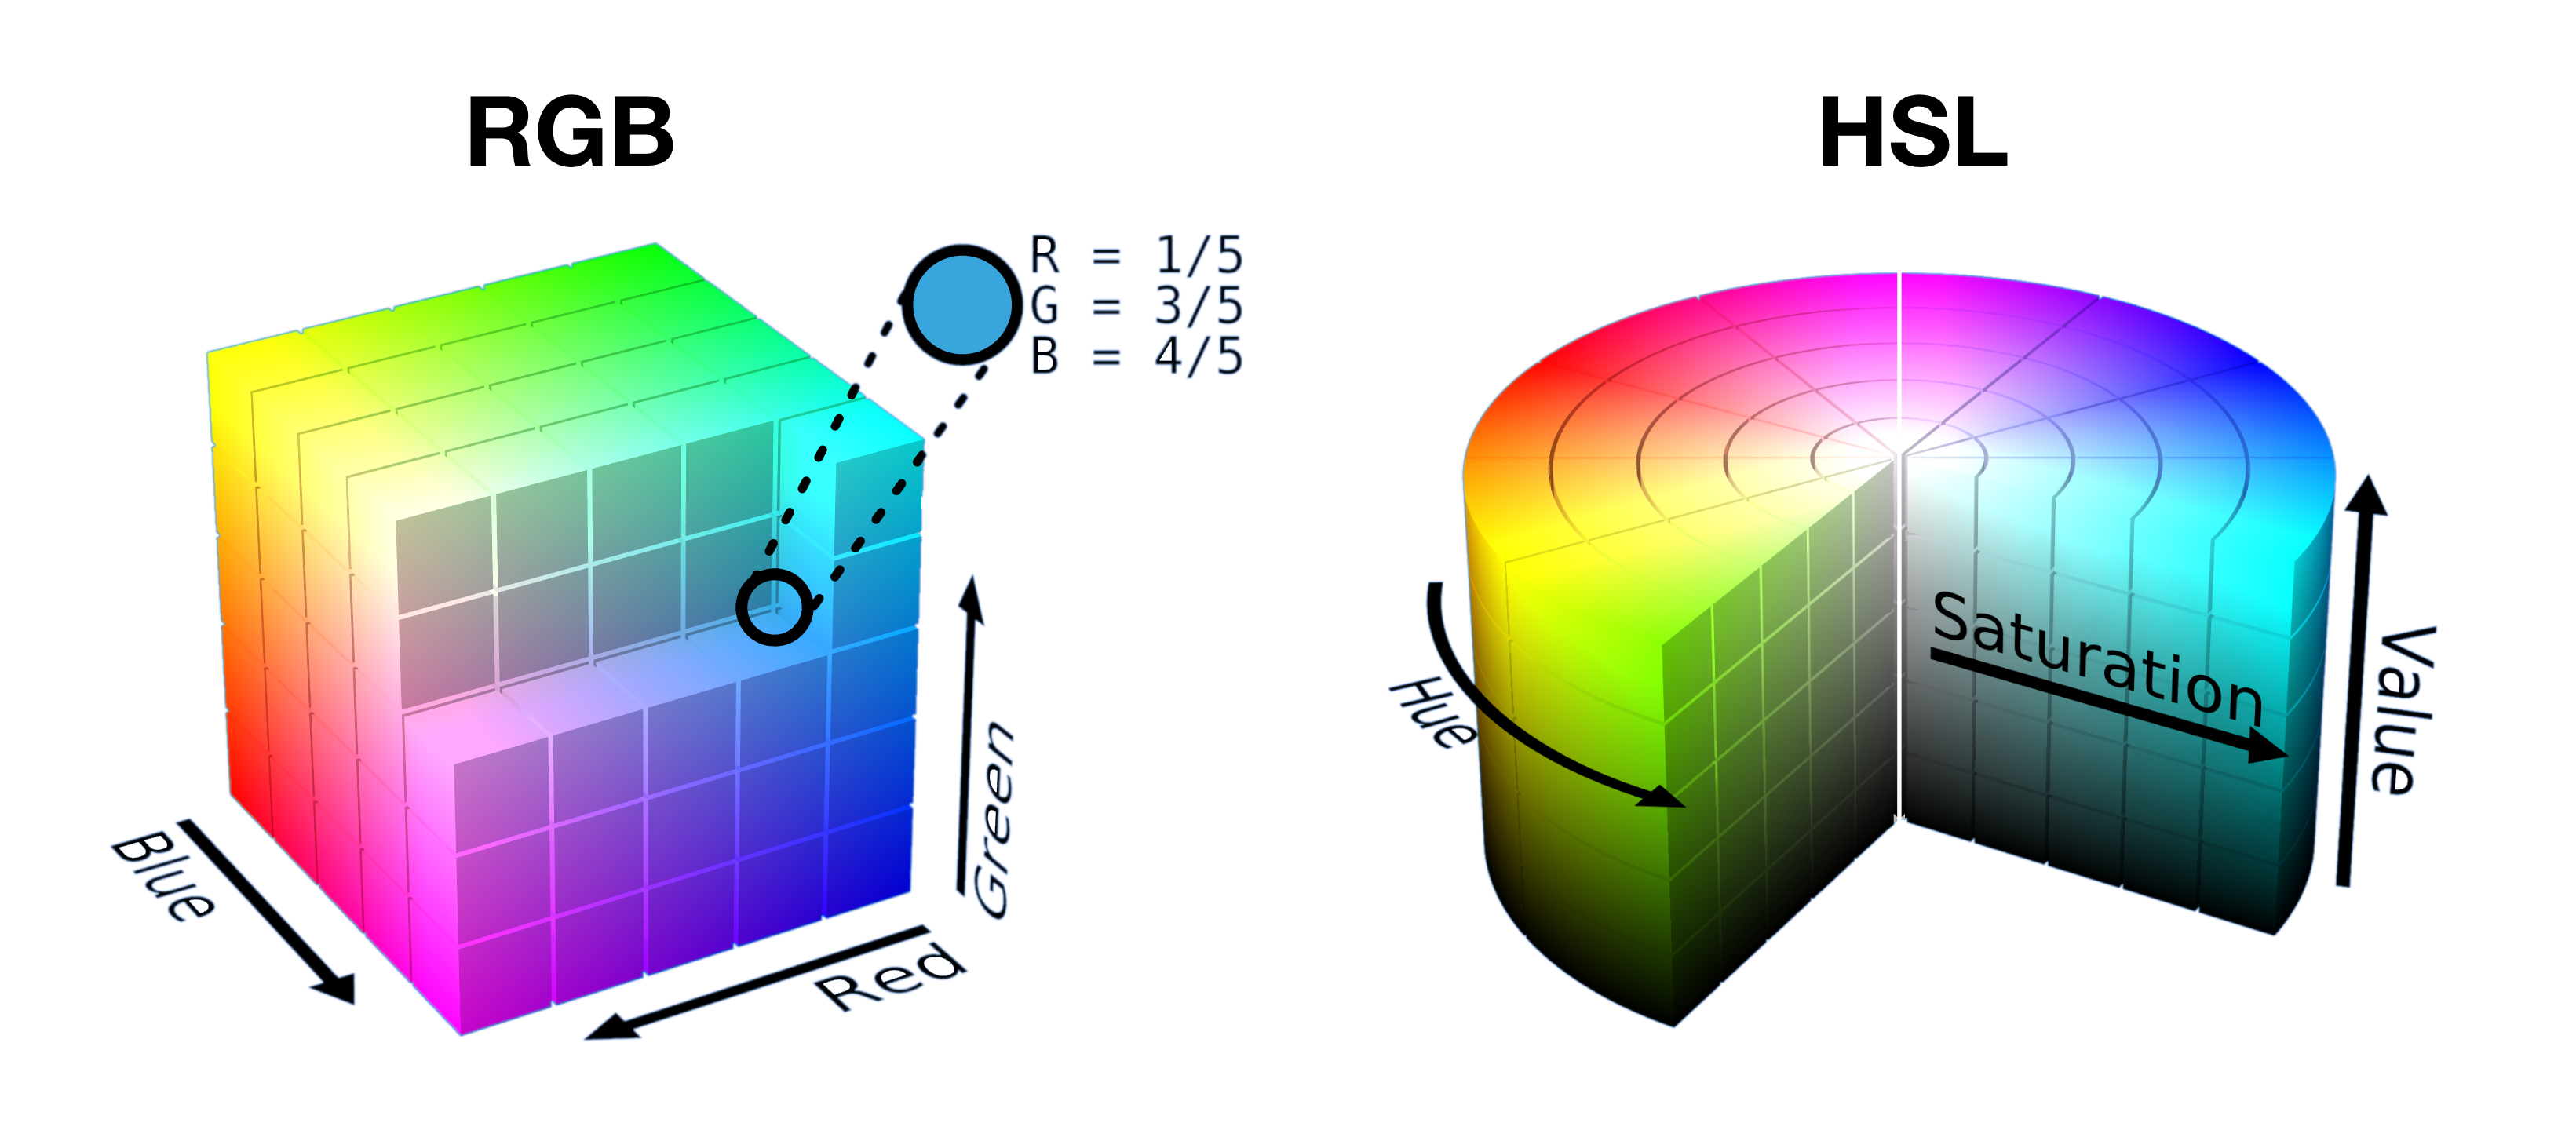 ويتم عرض مكعّب نموذج أحمر أخضر أزرق مفتوح نصف القطع وشرائحه في أسطوانة HSL جنبًا إلى جنب لإظهار كيفية تجميع الألوان في شكل في كل مساحة.